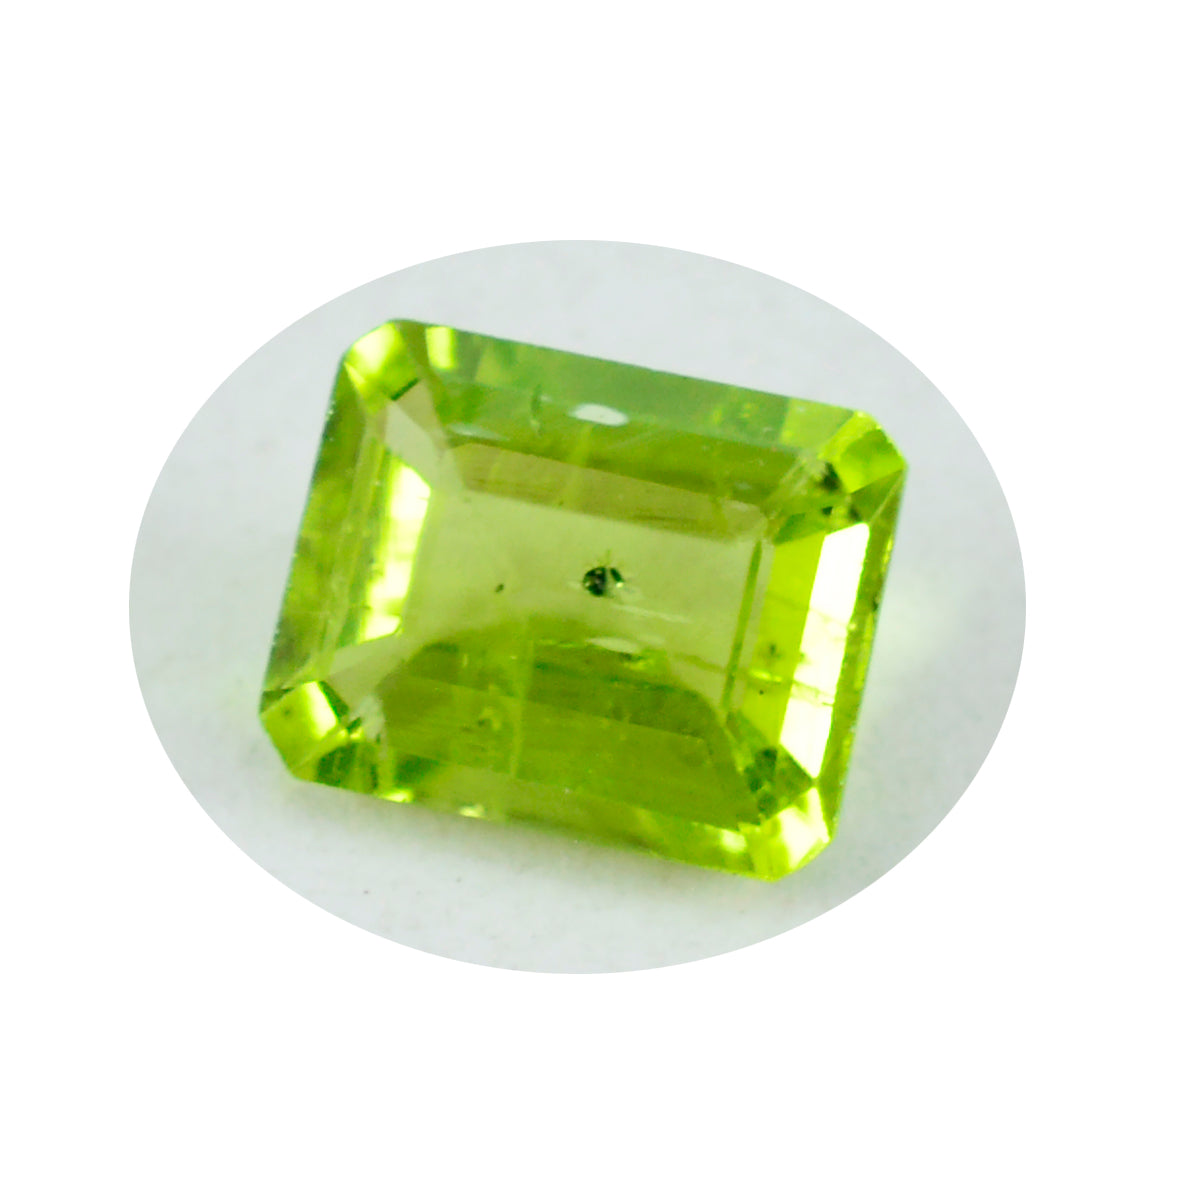 riyogems 1 шт. натуральный зеленый перидот граненый 10x12 мм восьмиугольной формы драгоценный камень превосходного качества